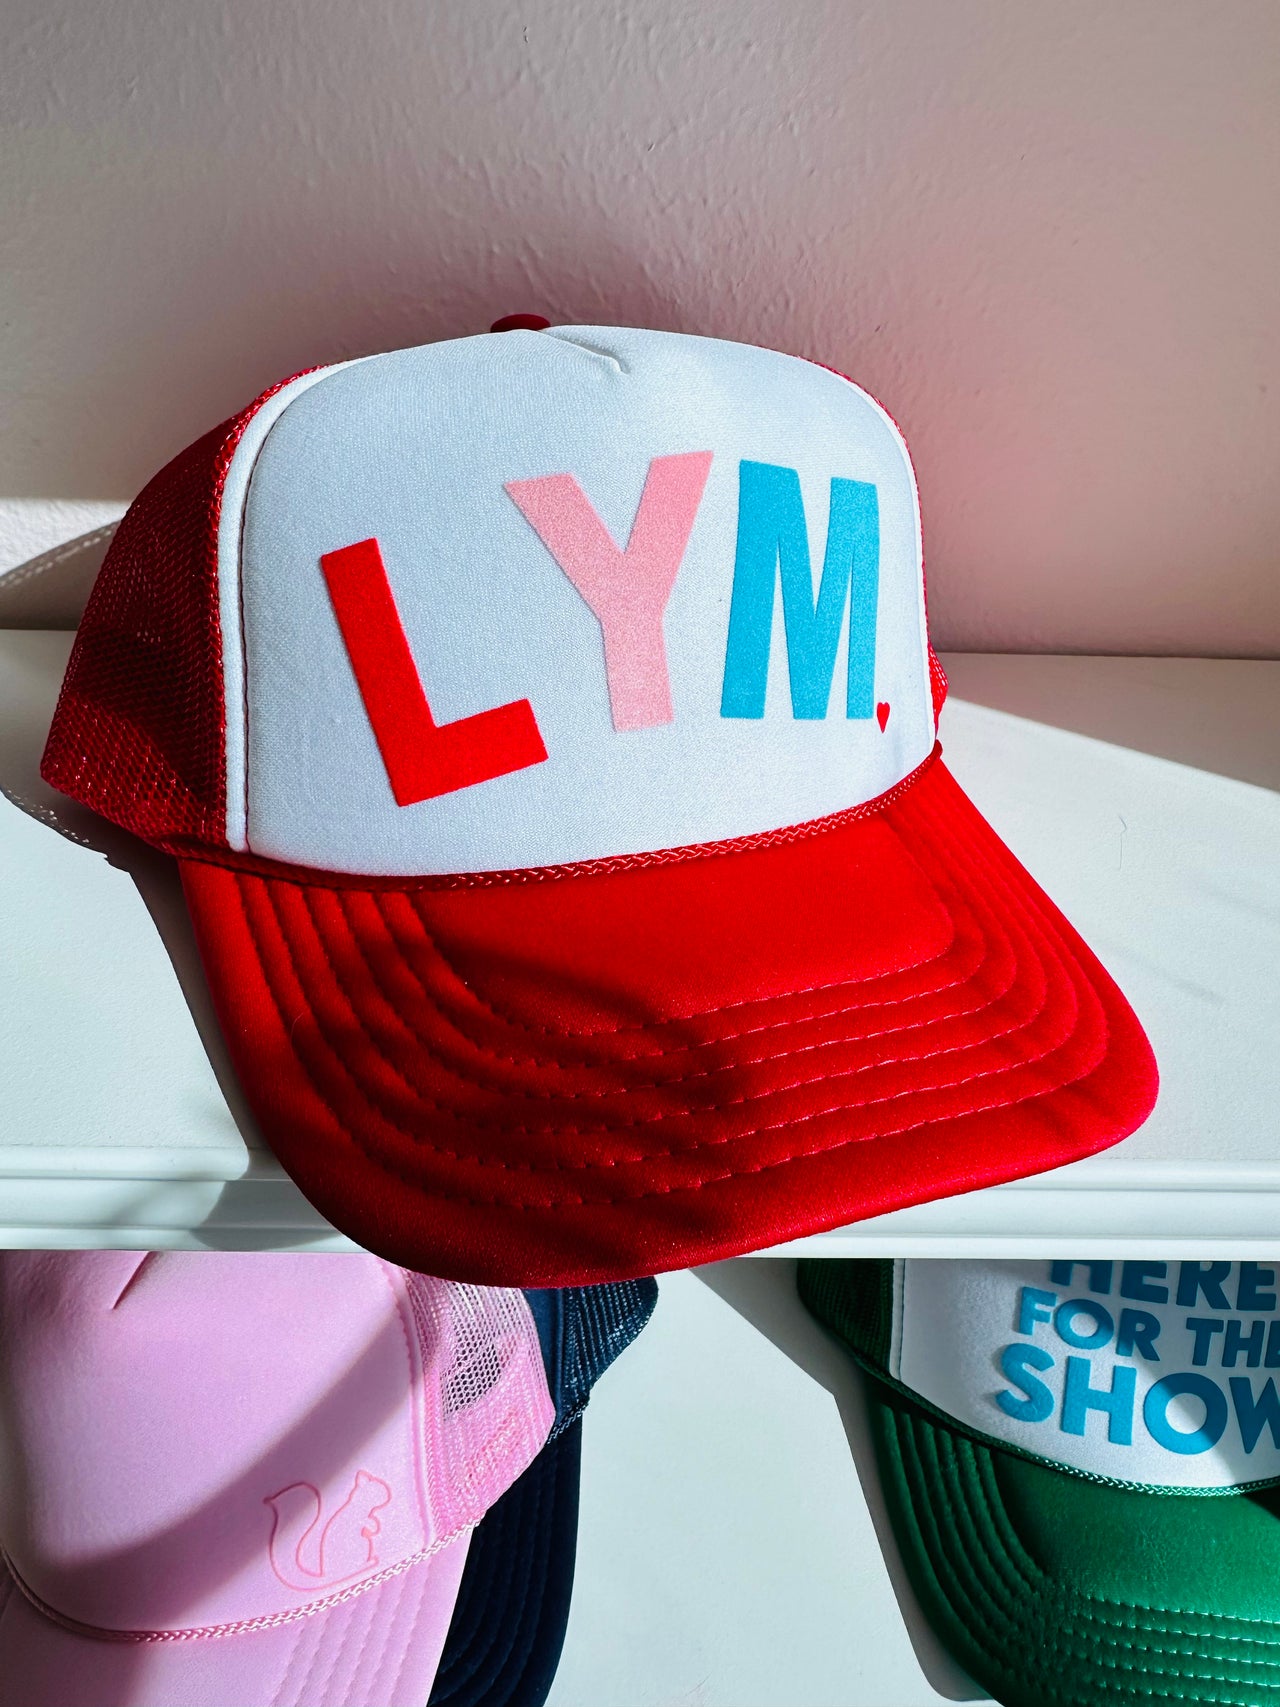 LYM White/Red Trucker